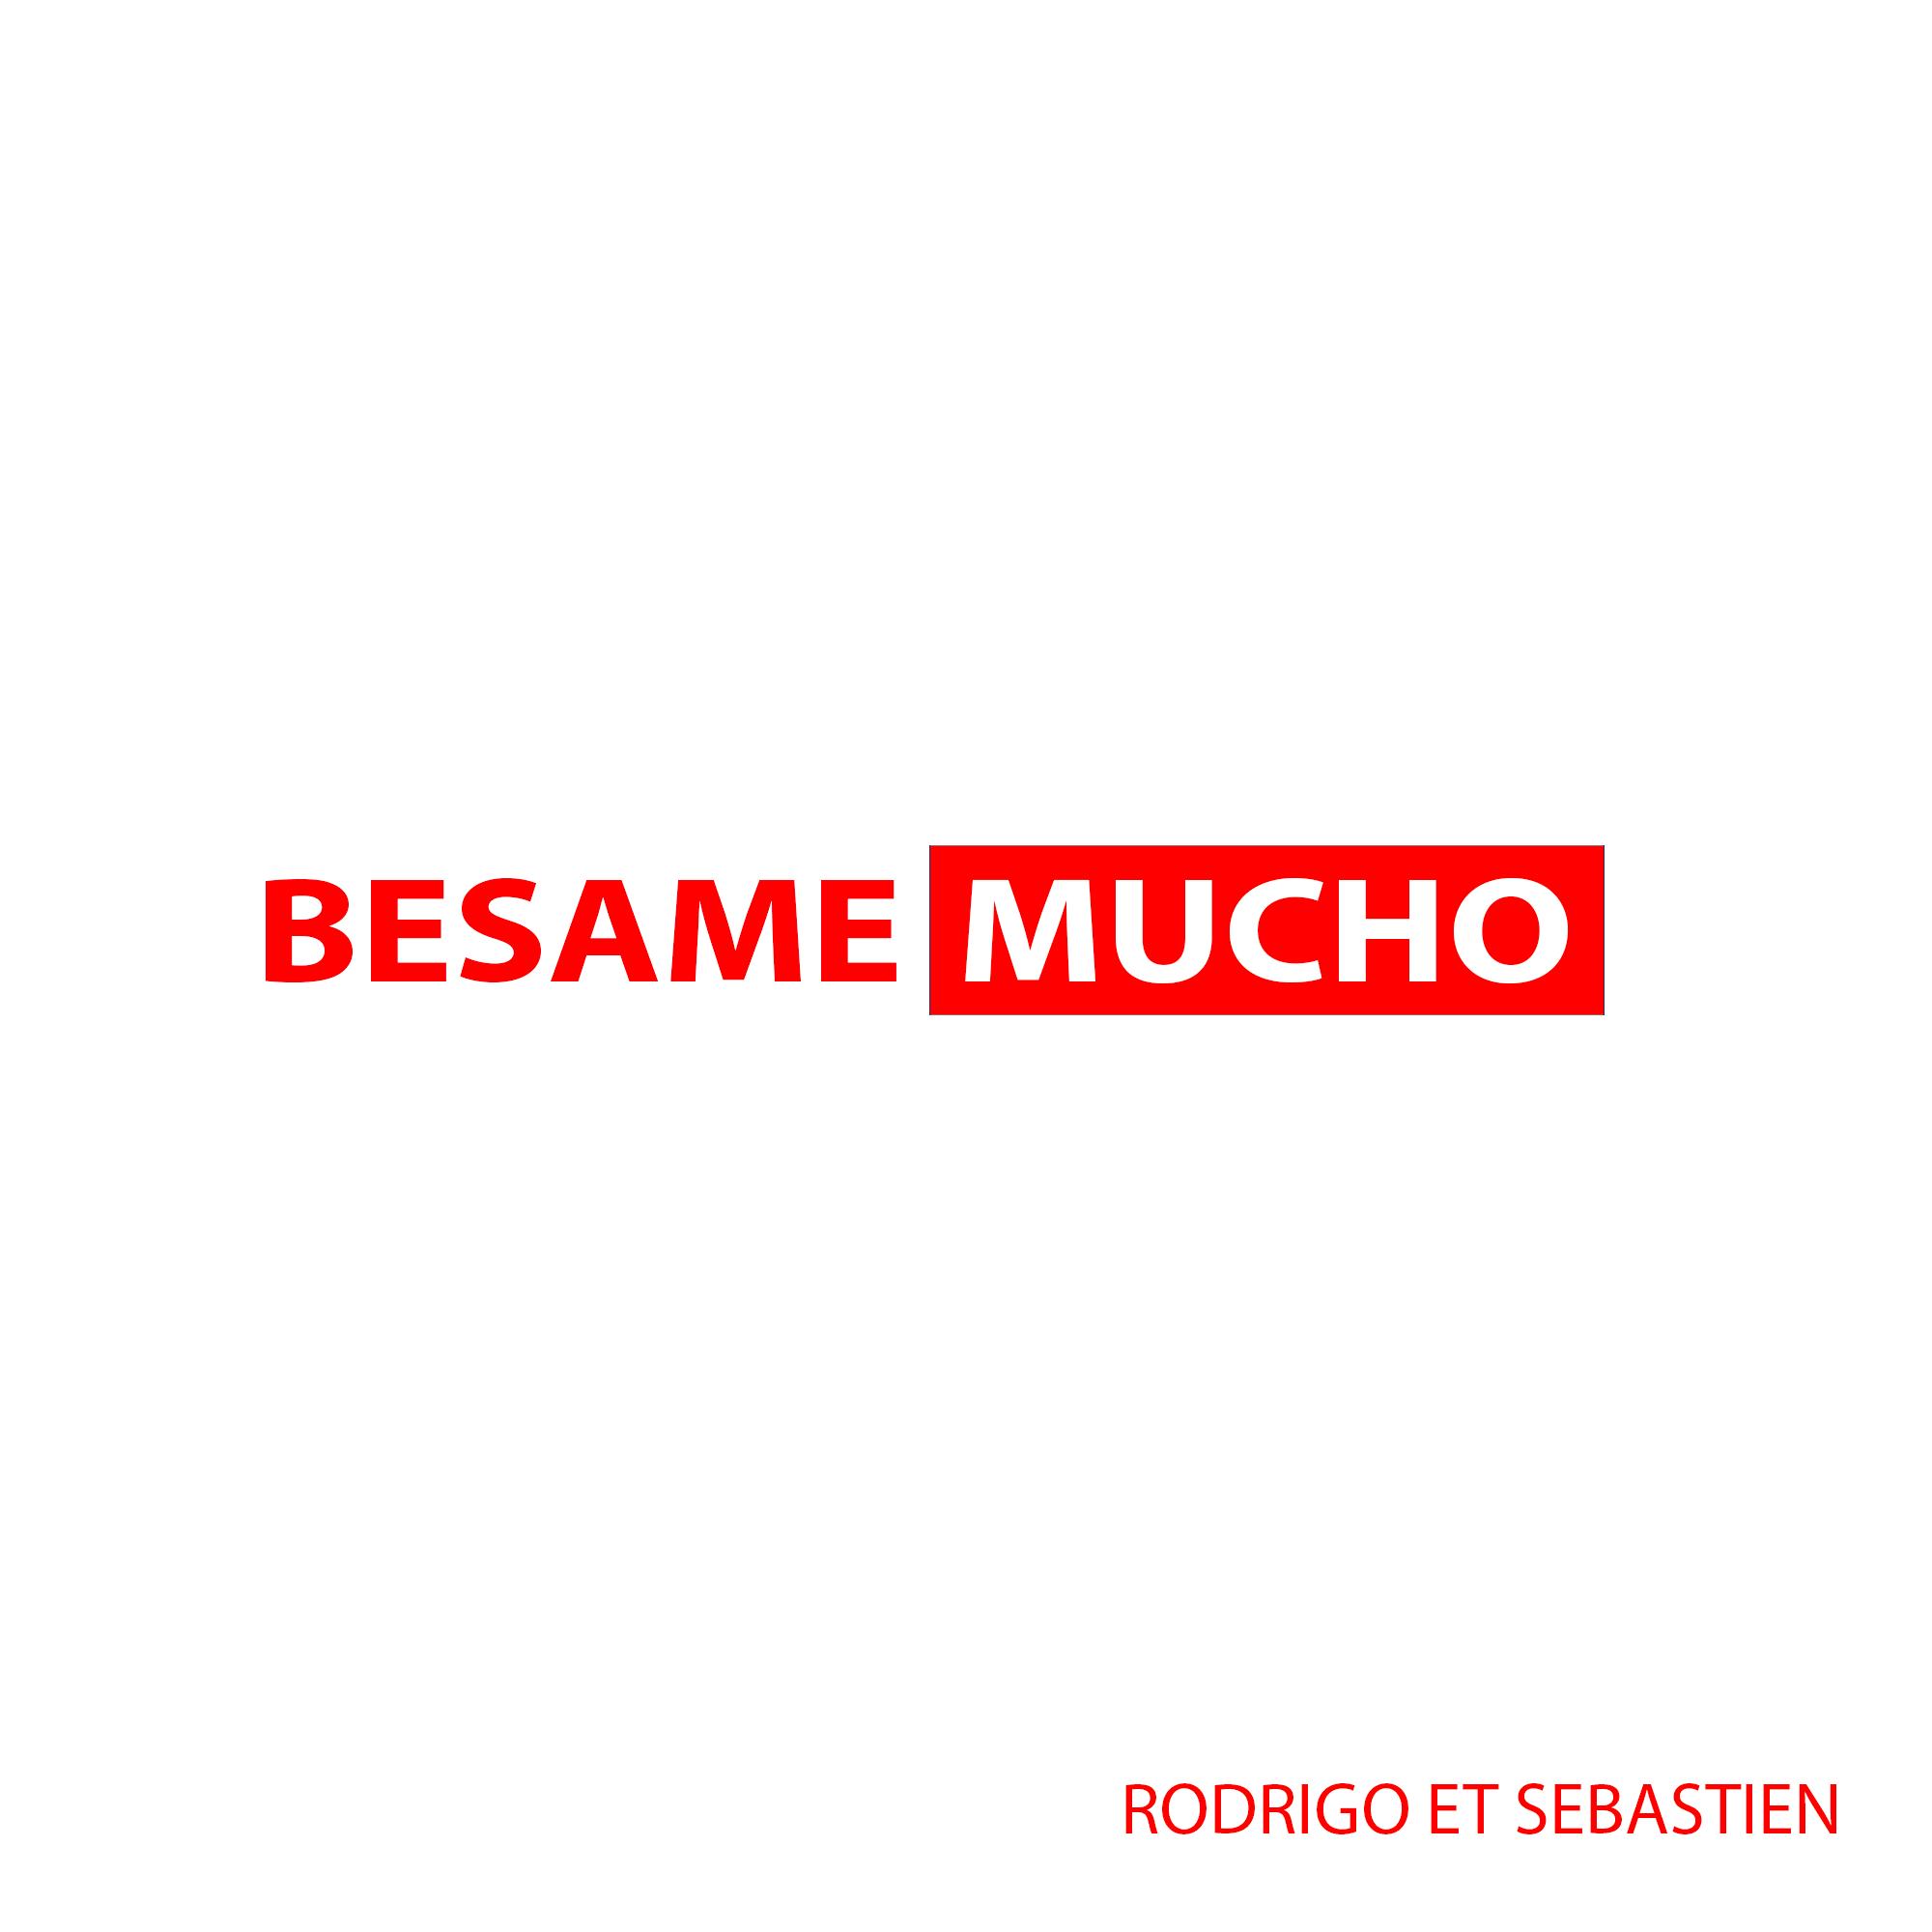 BESAME MUCHO - Rodrigo et Sébastien